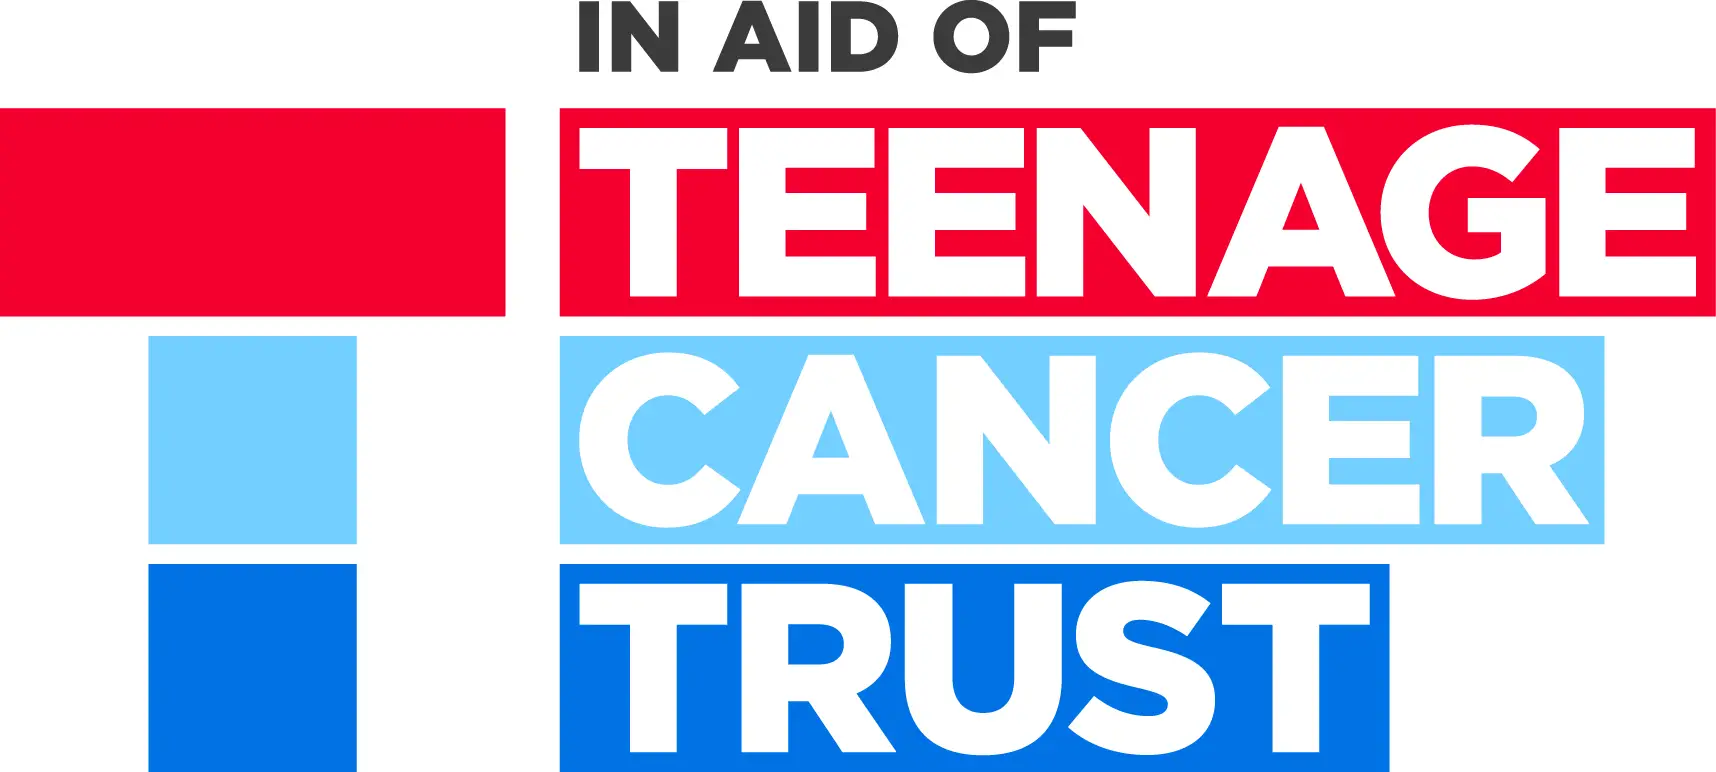 Teenage Cancer Trust in aid of logo cmyk_0